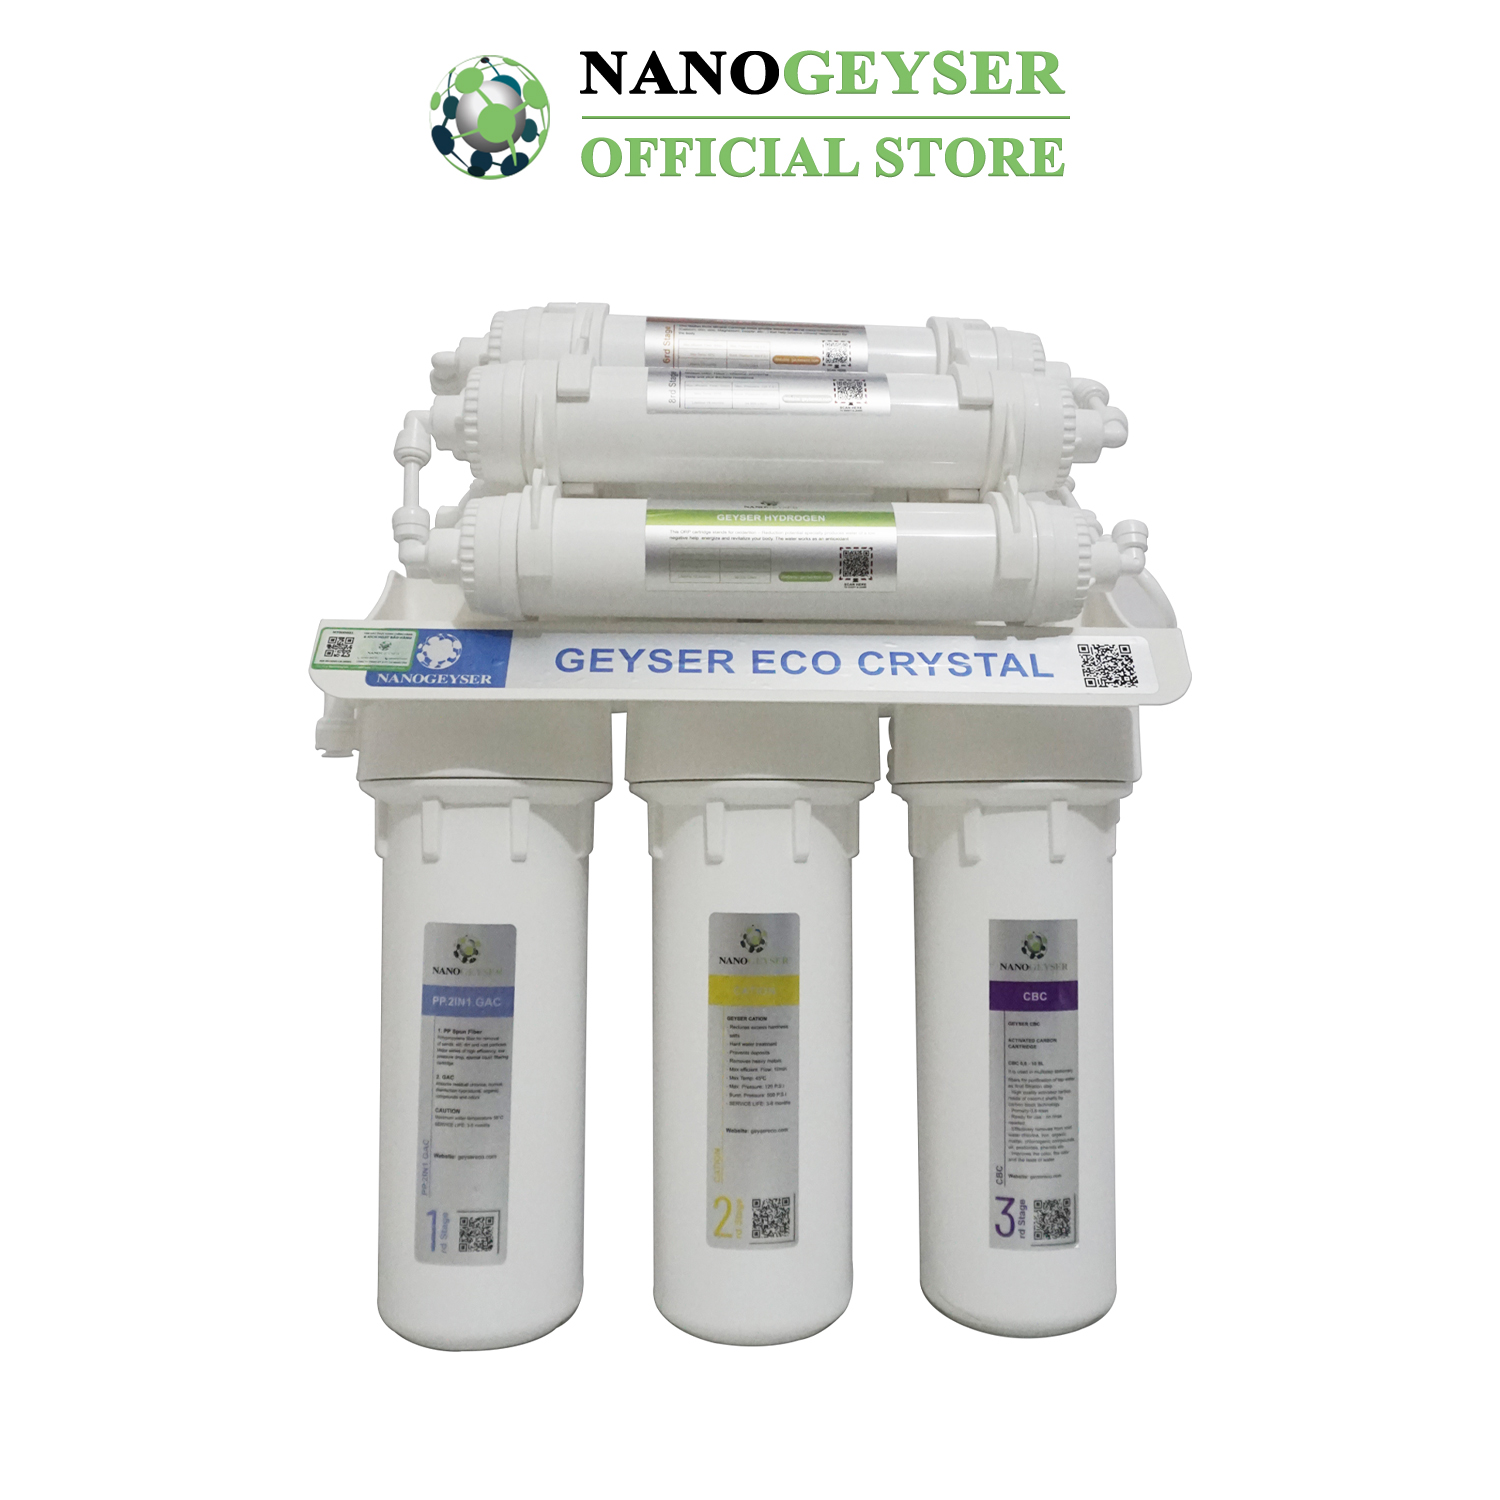 Máy lọc nước Nano Geyser ECO CRYSTAL công nghệ lọc UF - Hàng Chính Hãng